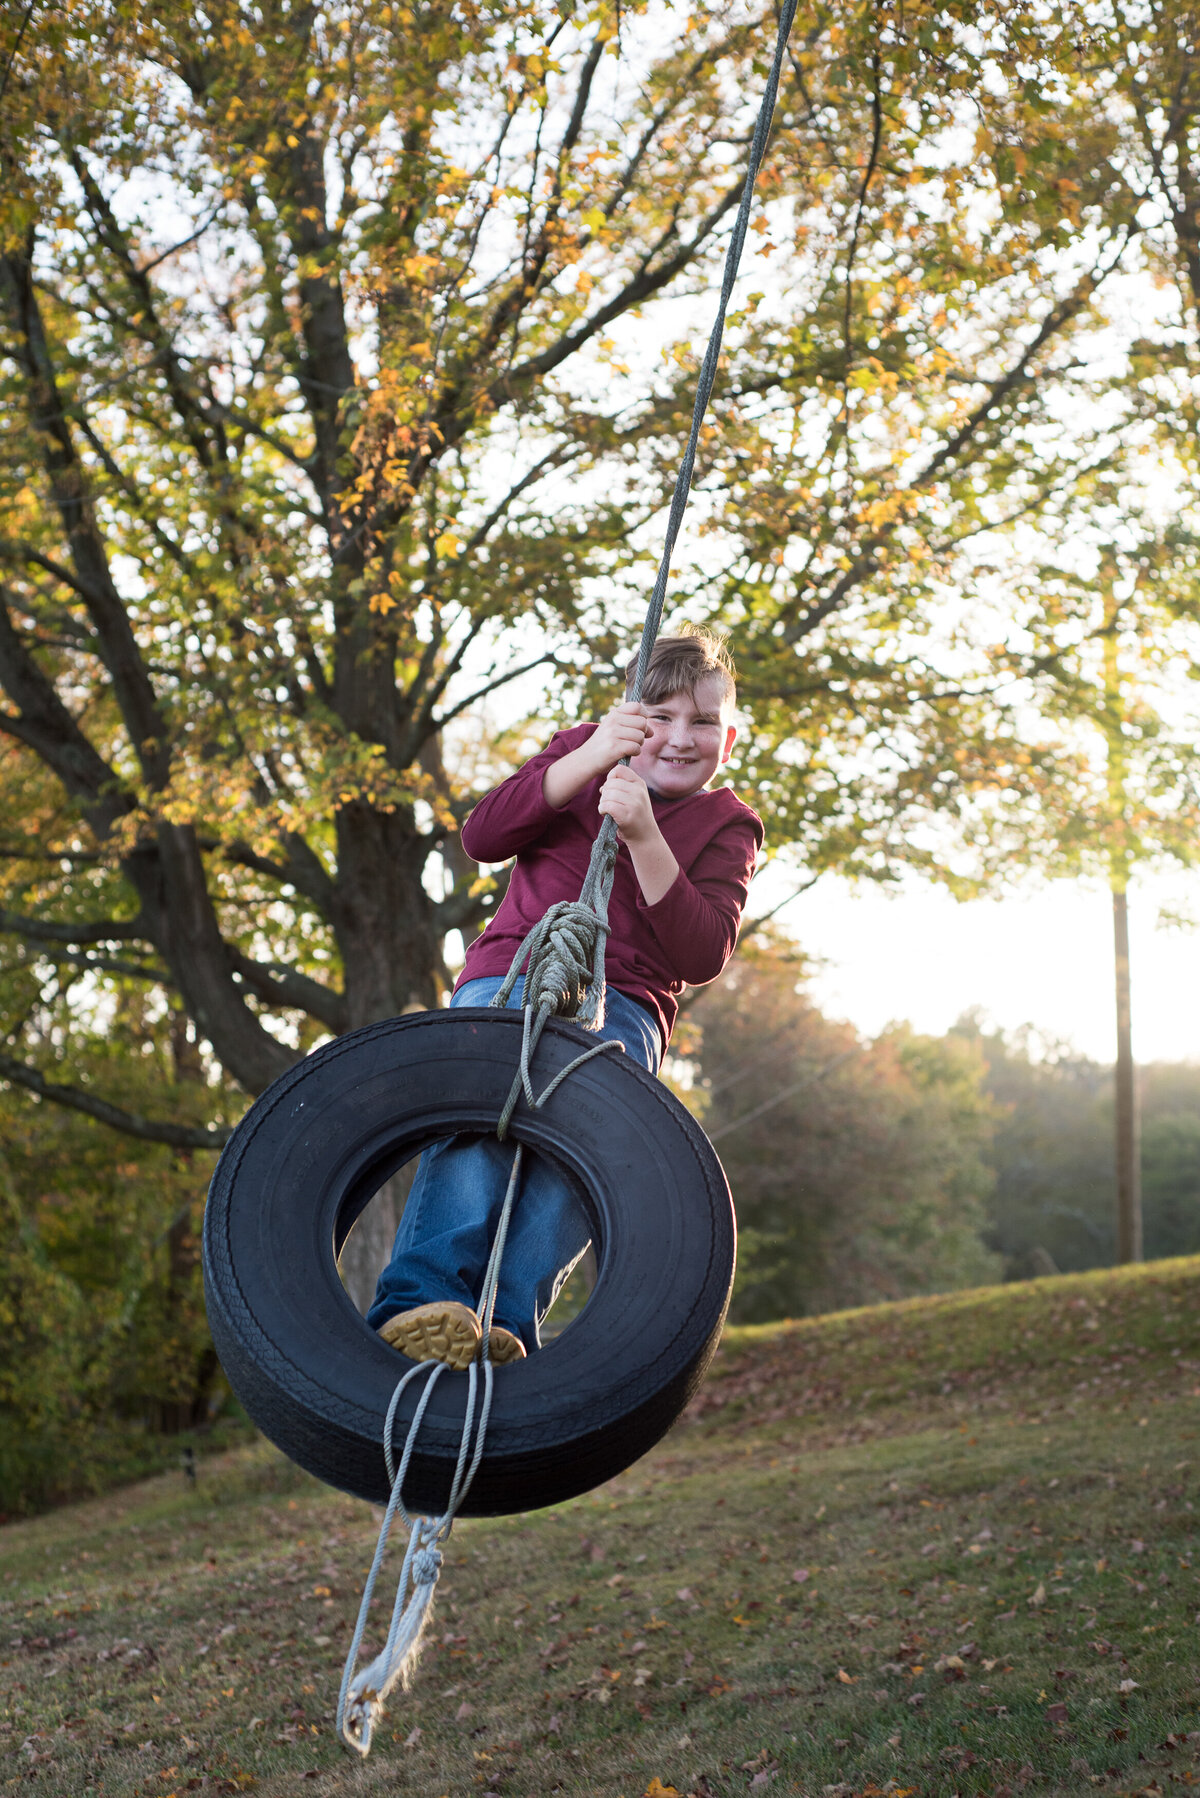 Boy on a tire swing